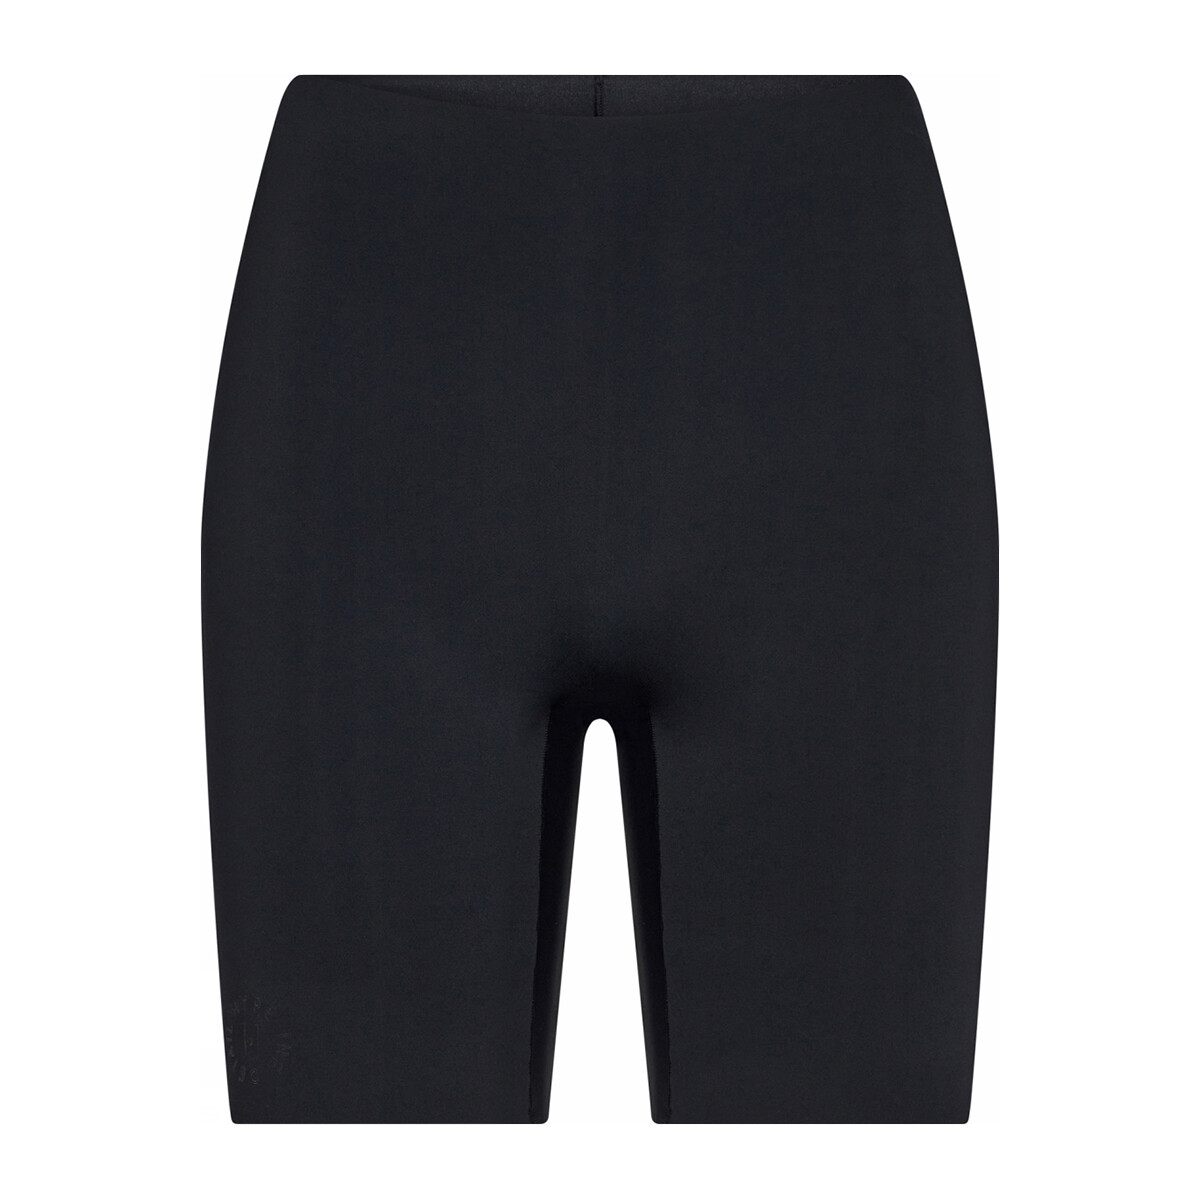 Se Hype The Detail Essentials Shorts, Farve: Sort, Størrelse: XL, Dame hos Netlingeri.dk